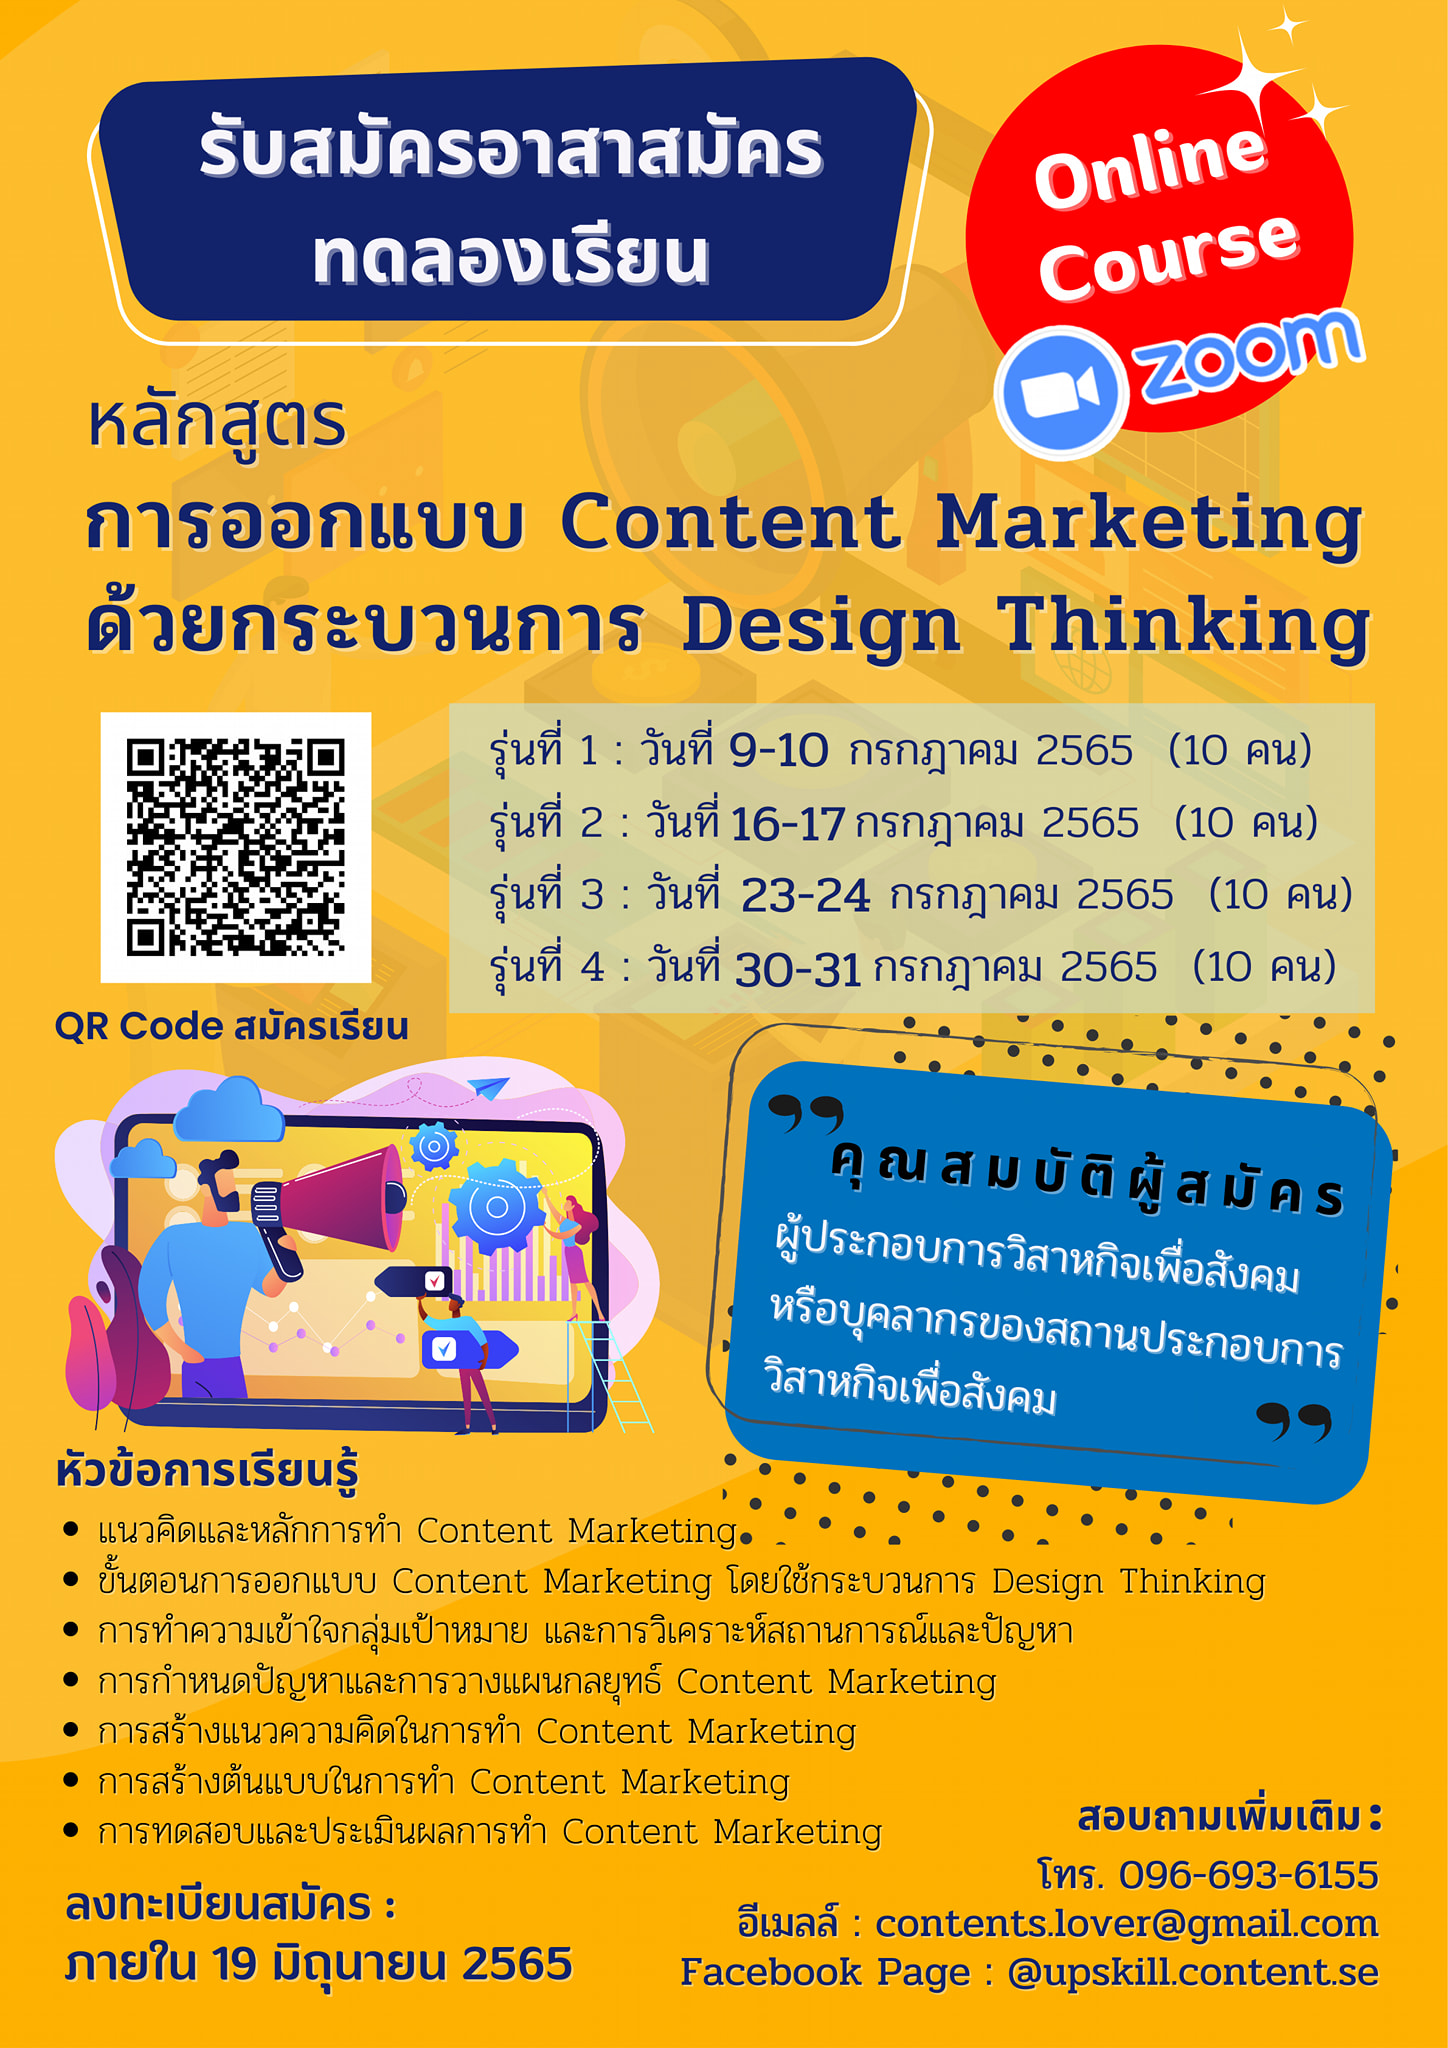 ทดลองเรียน หลักสูตร การออกแบบ Content Marketing ด้วยกระบวนการ Design Thinking